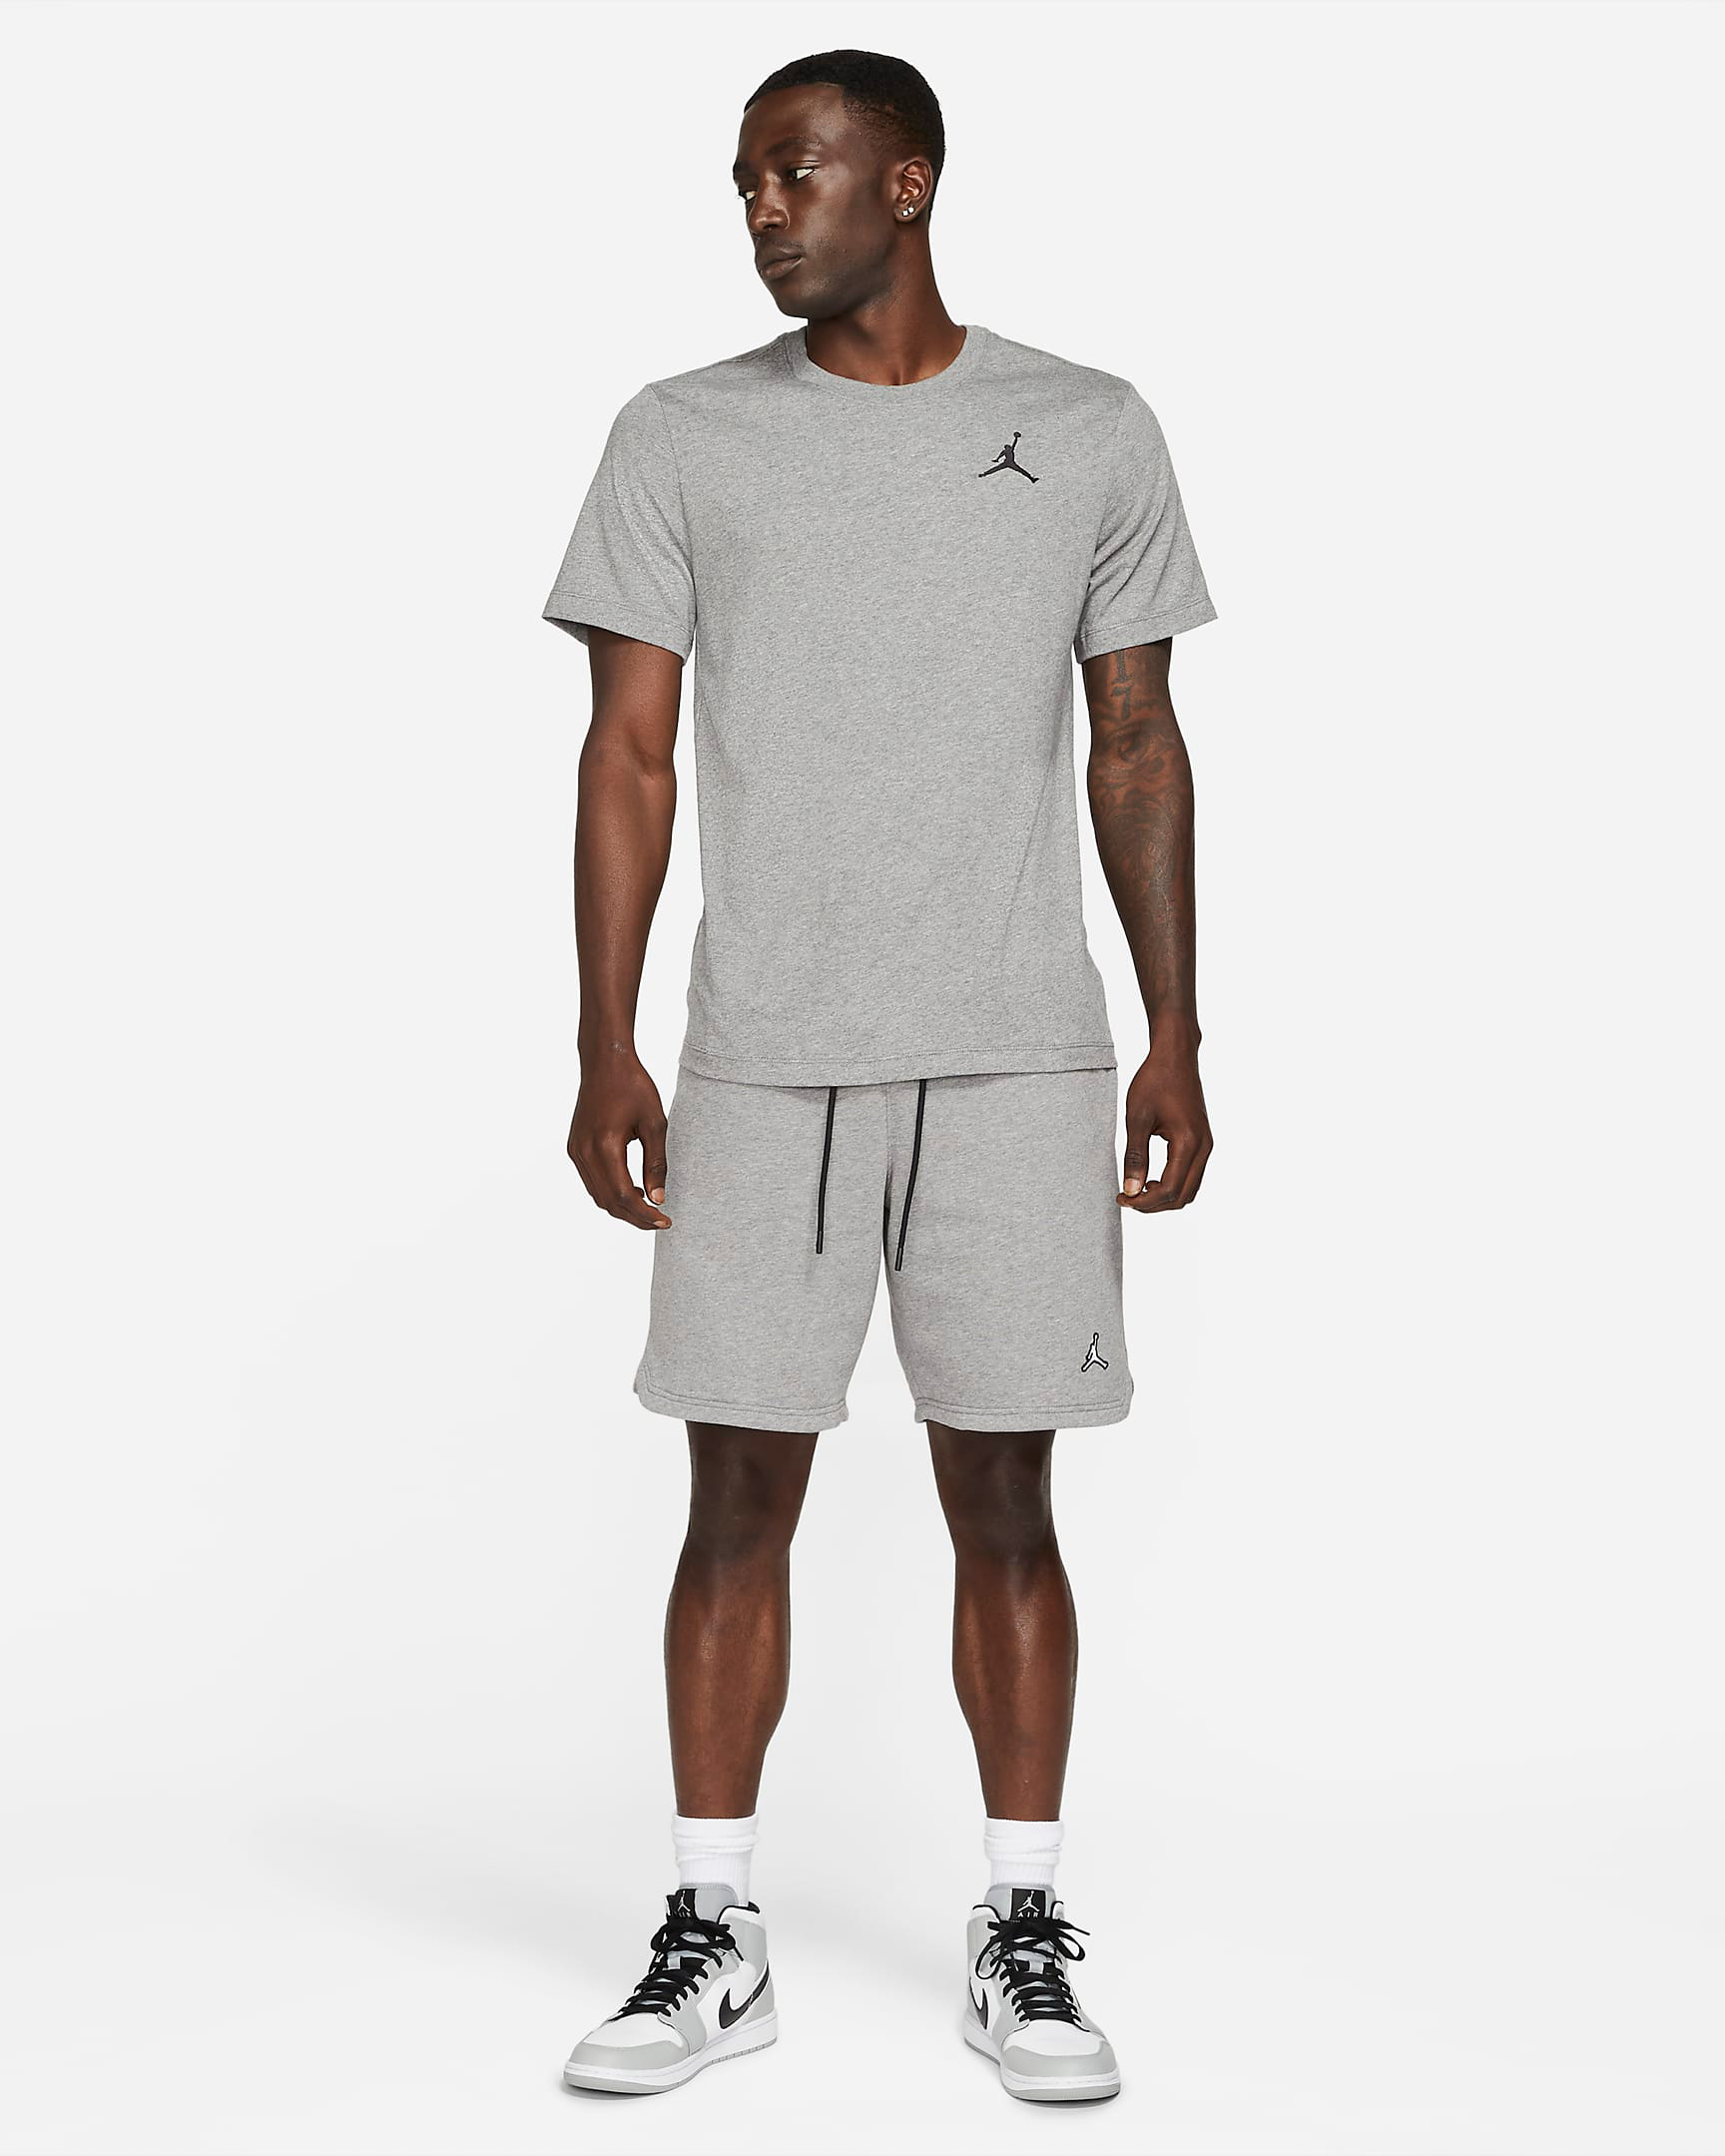 air-jordan-11-cool-grey-2021-fleece-shorts-shirt-outfit